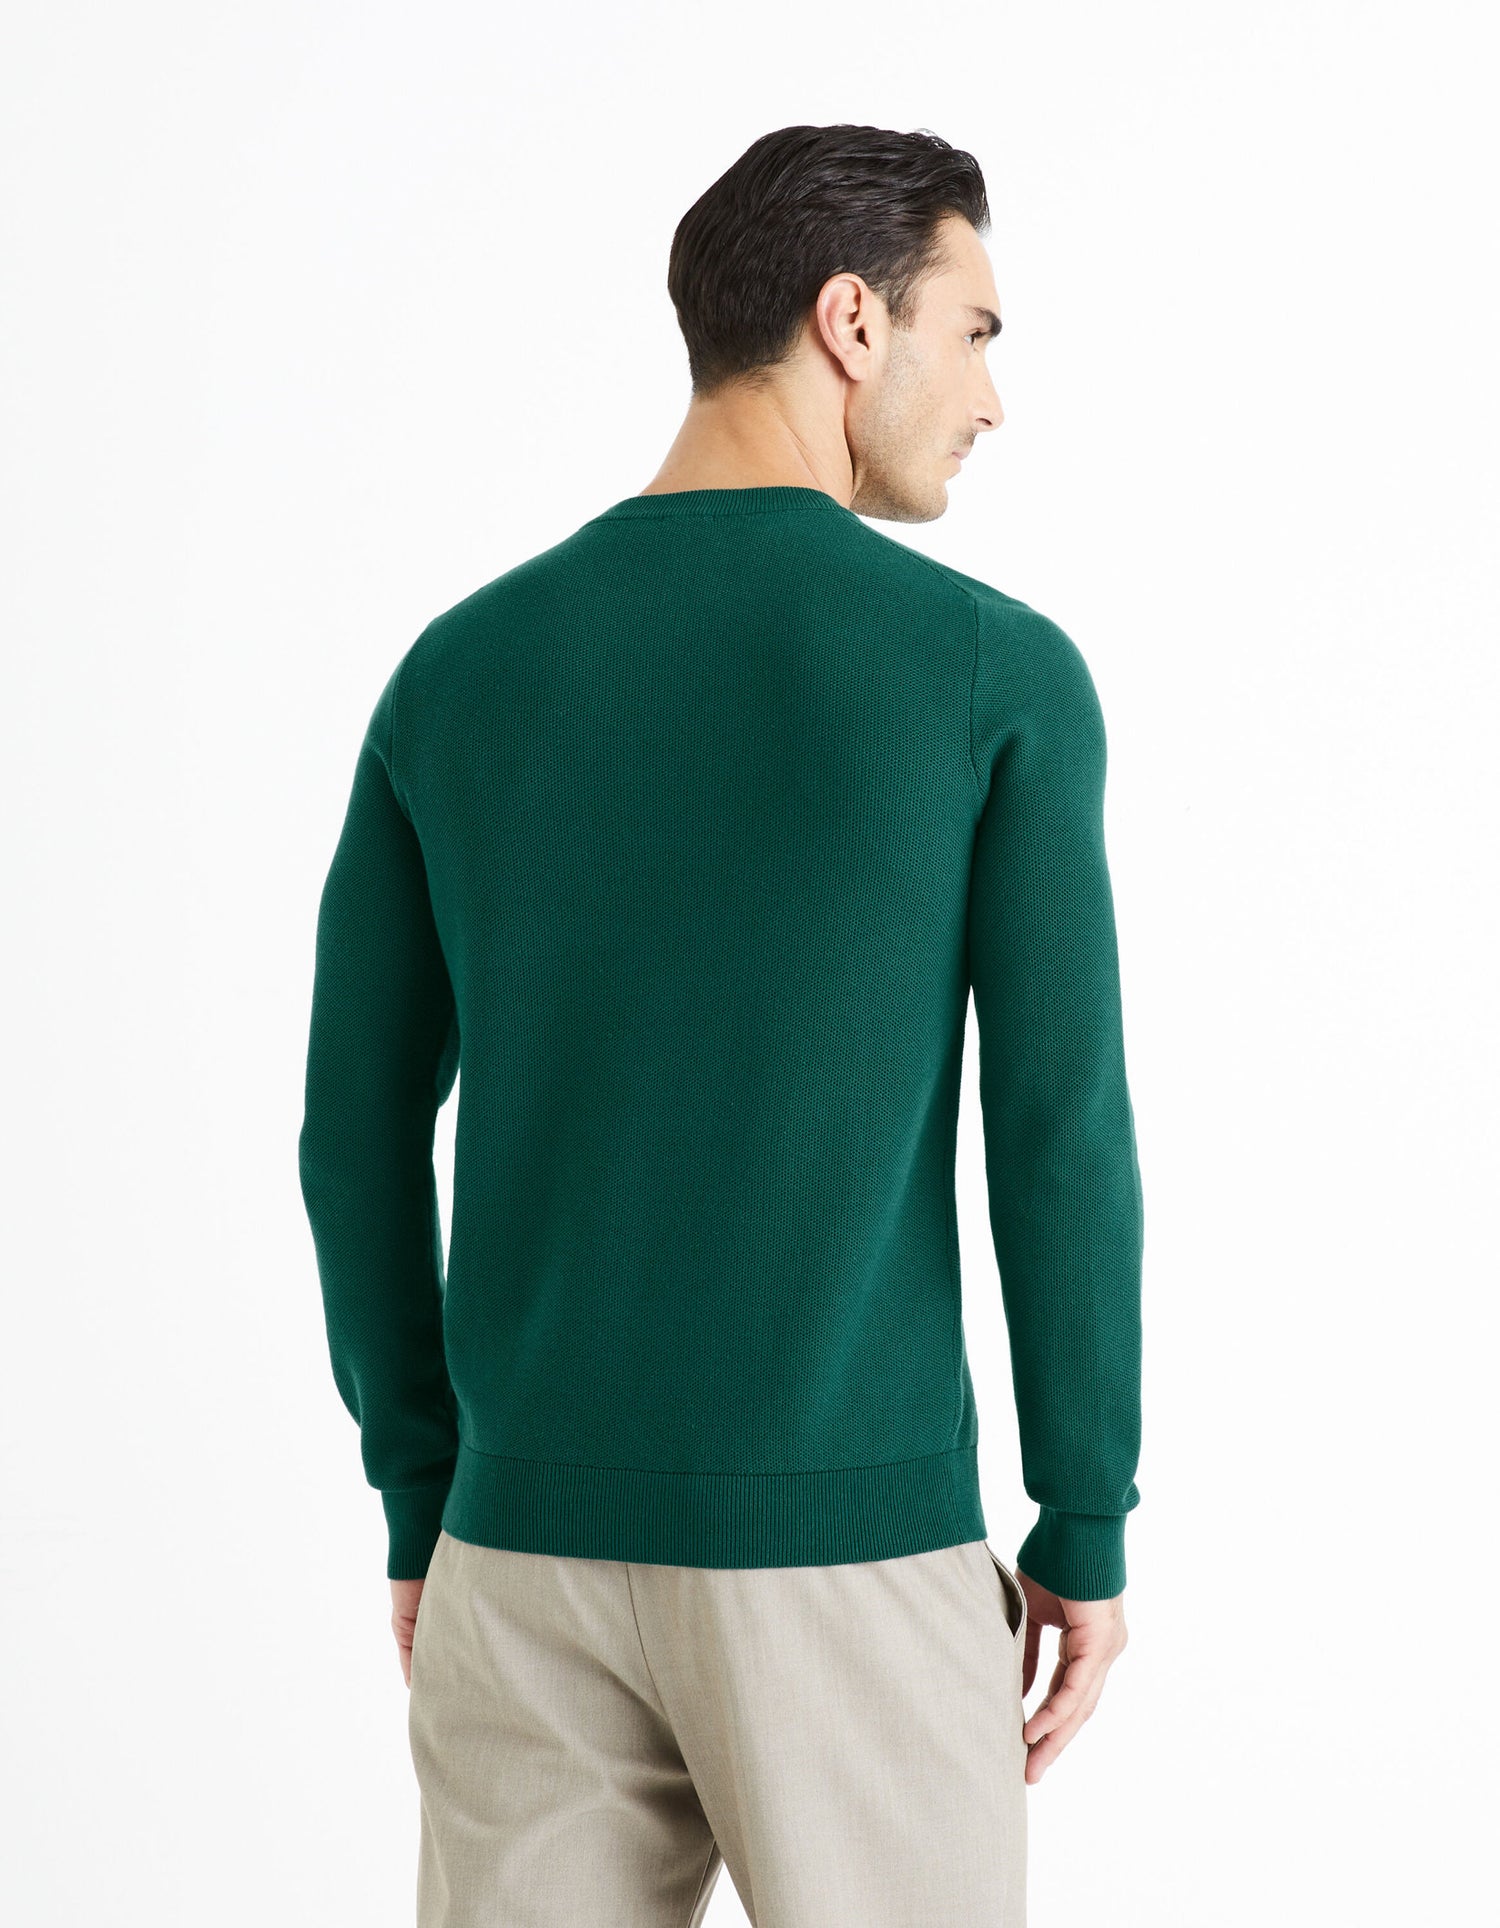 100% Cotton Round Neck Sweater - Green_BEPIC_DARK GREEN_04